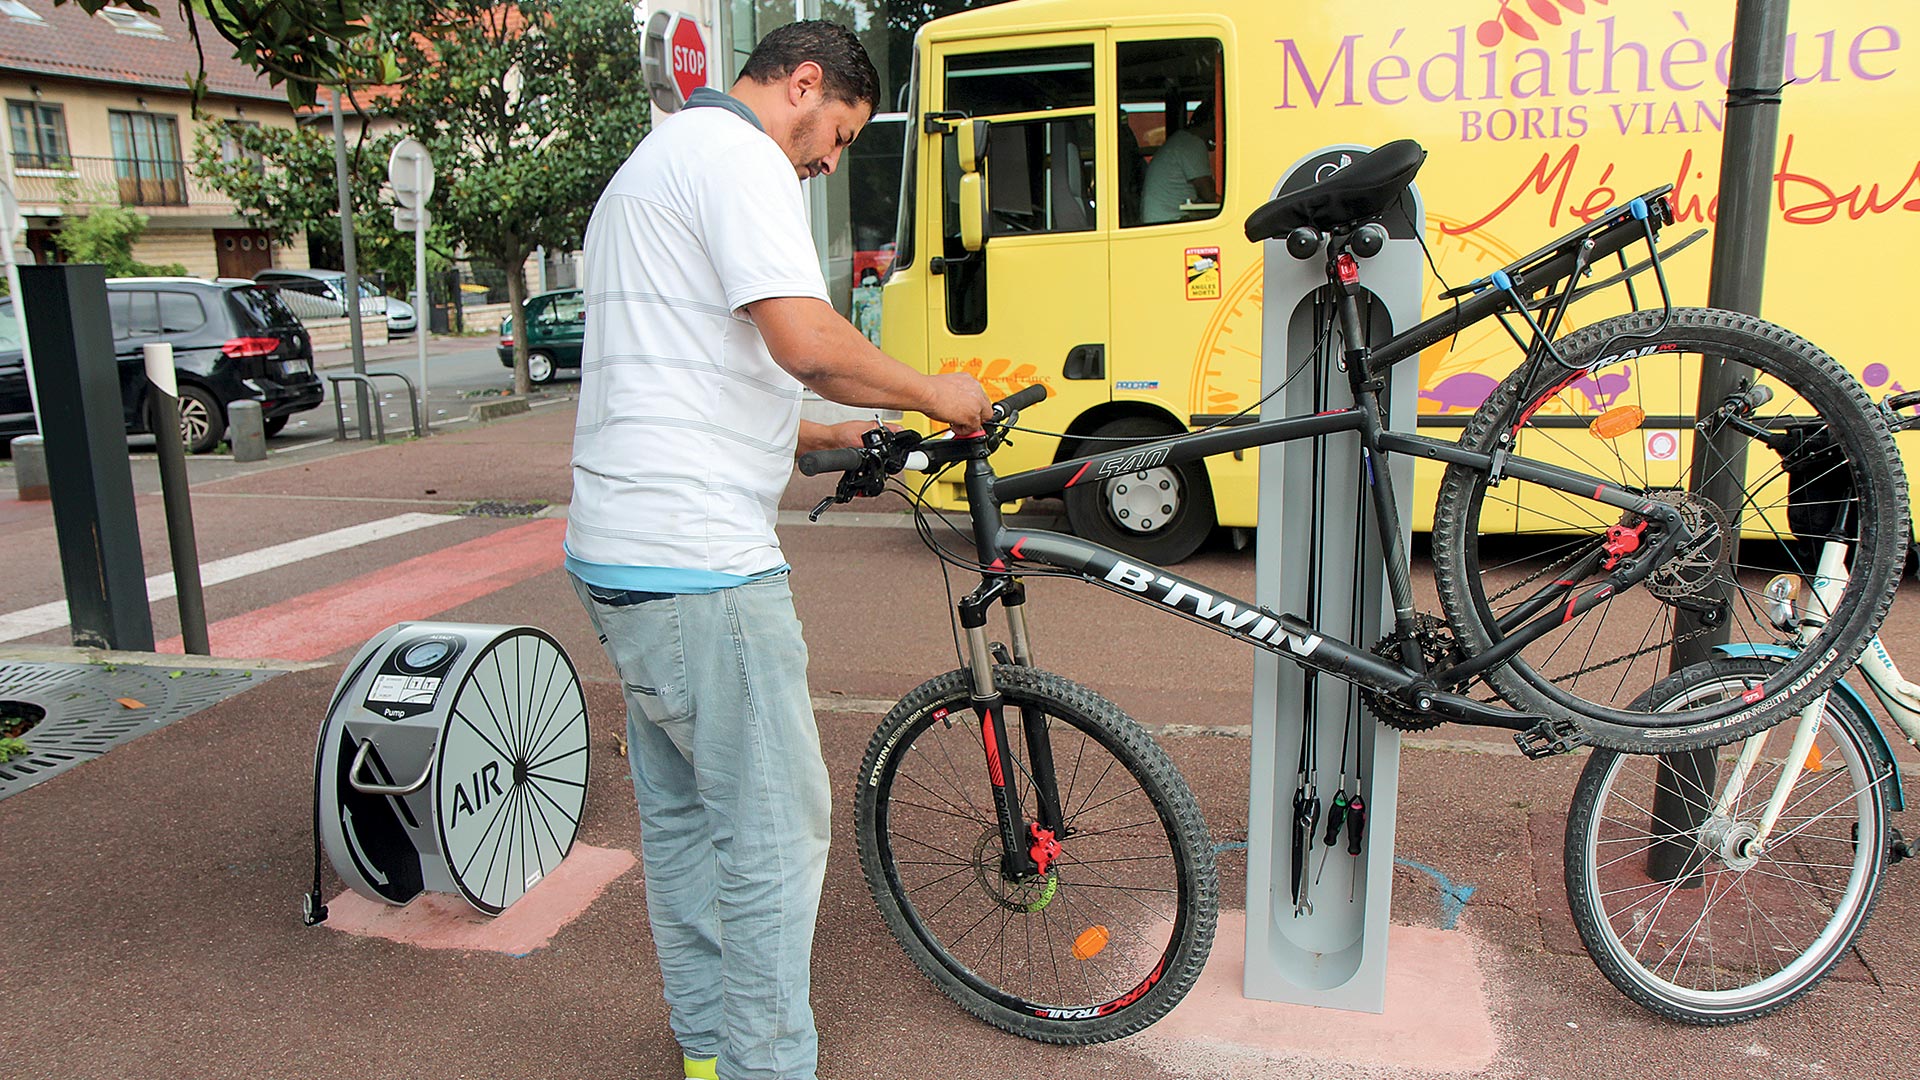 Pompe et kit de réparation roue pour vélo de ville